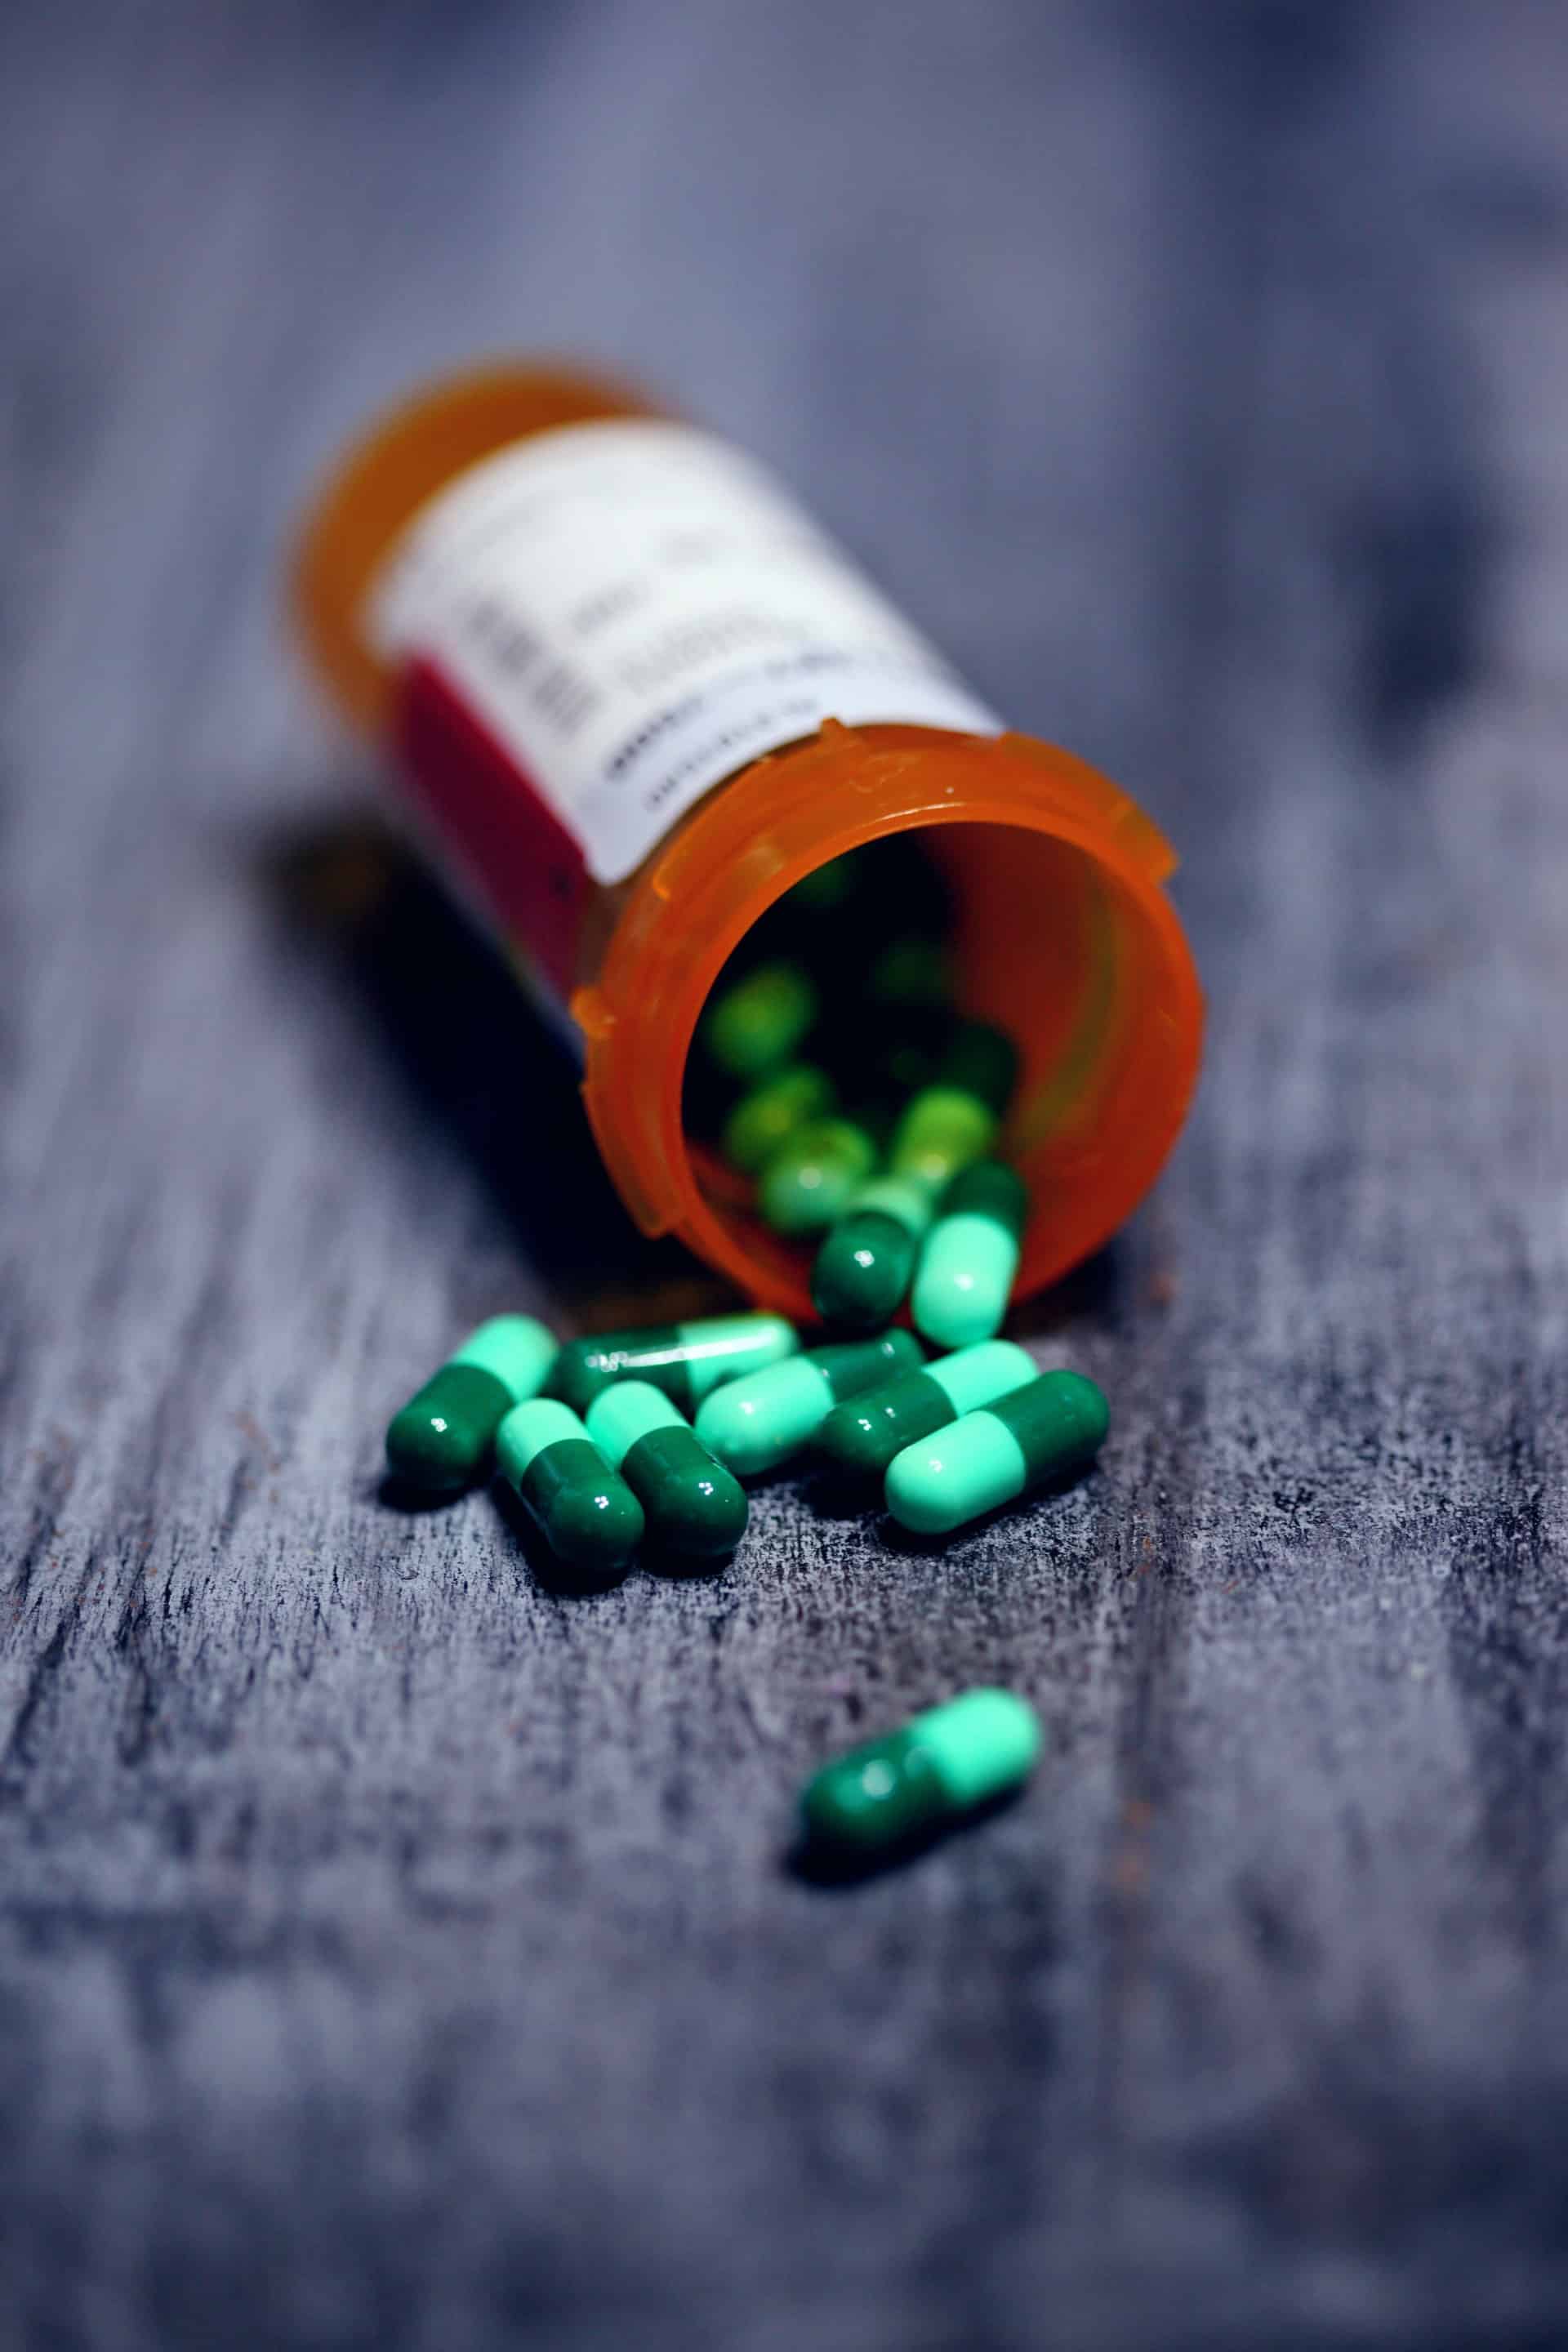 About Prescription Drug Problem US Article Image